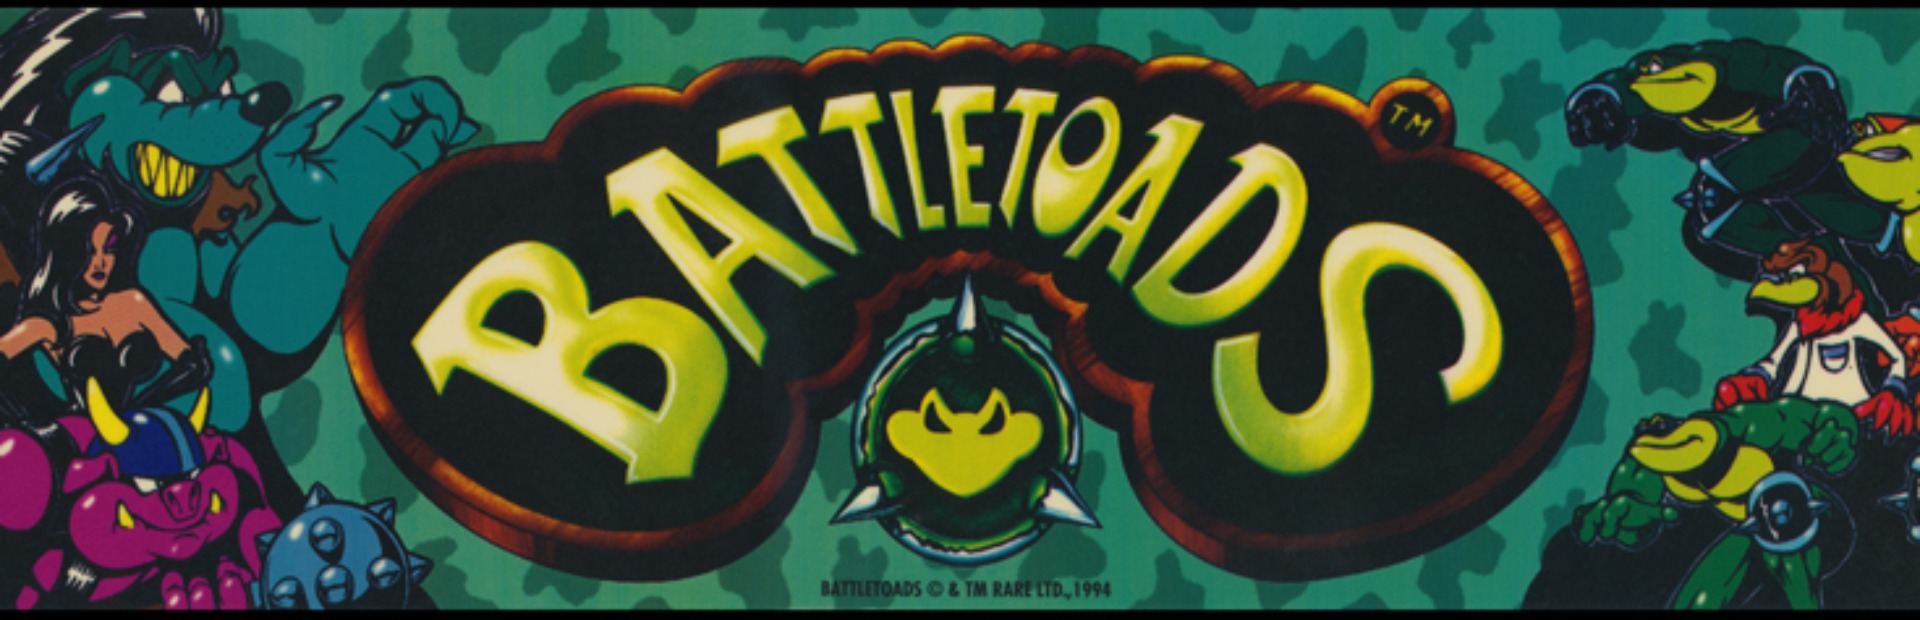 Пародию на какую игру battletoads. Батлтоадс Раш. Battletoads Arcade. Игровой автомат Battletoads.